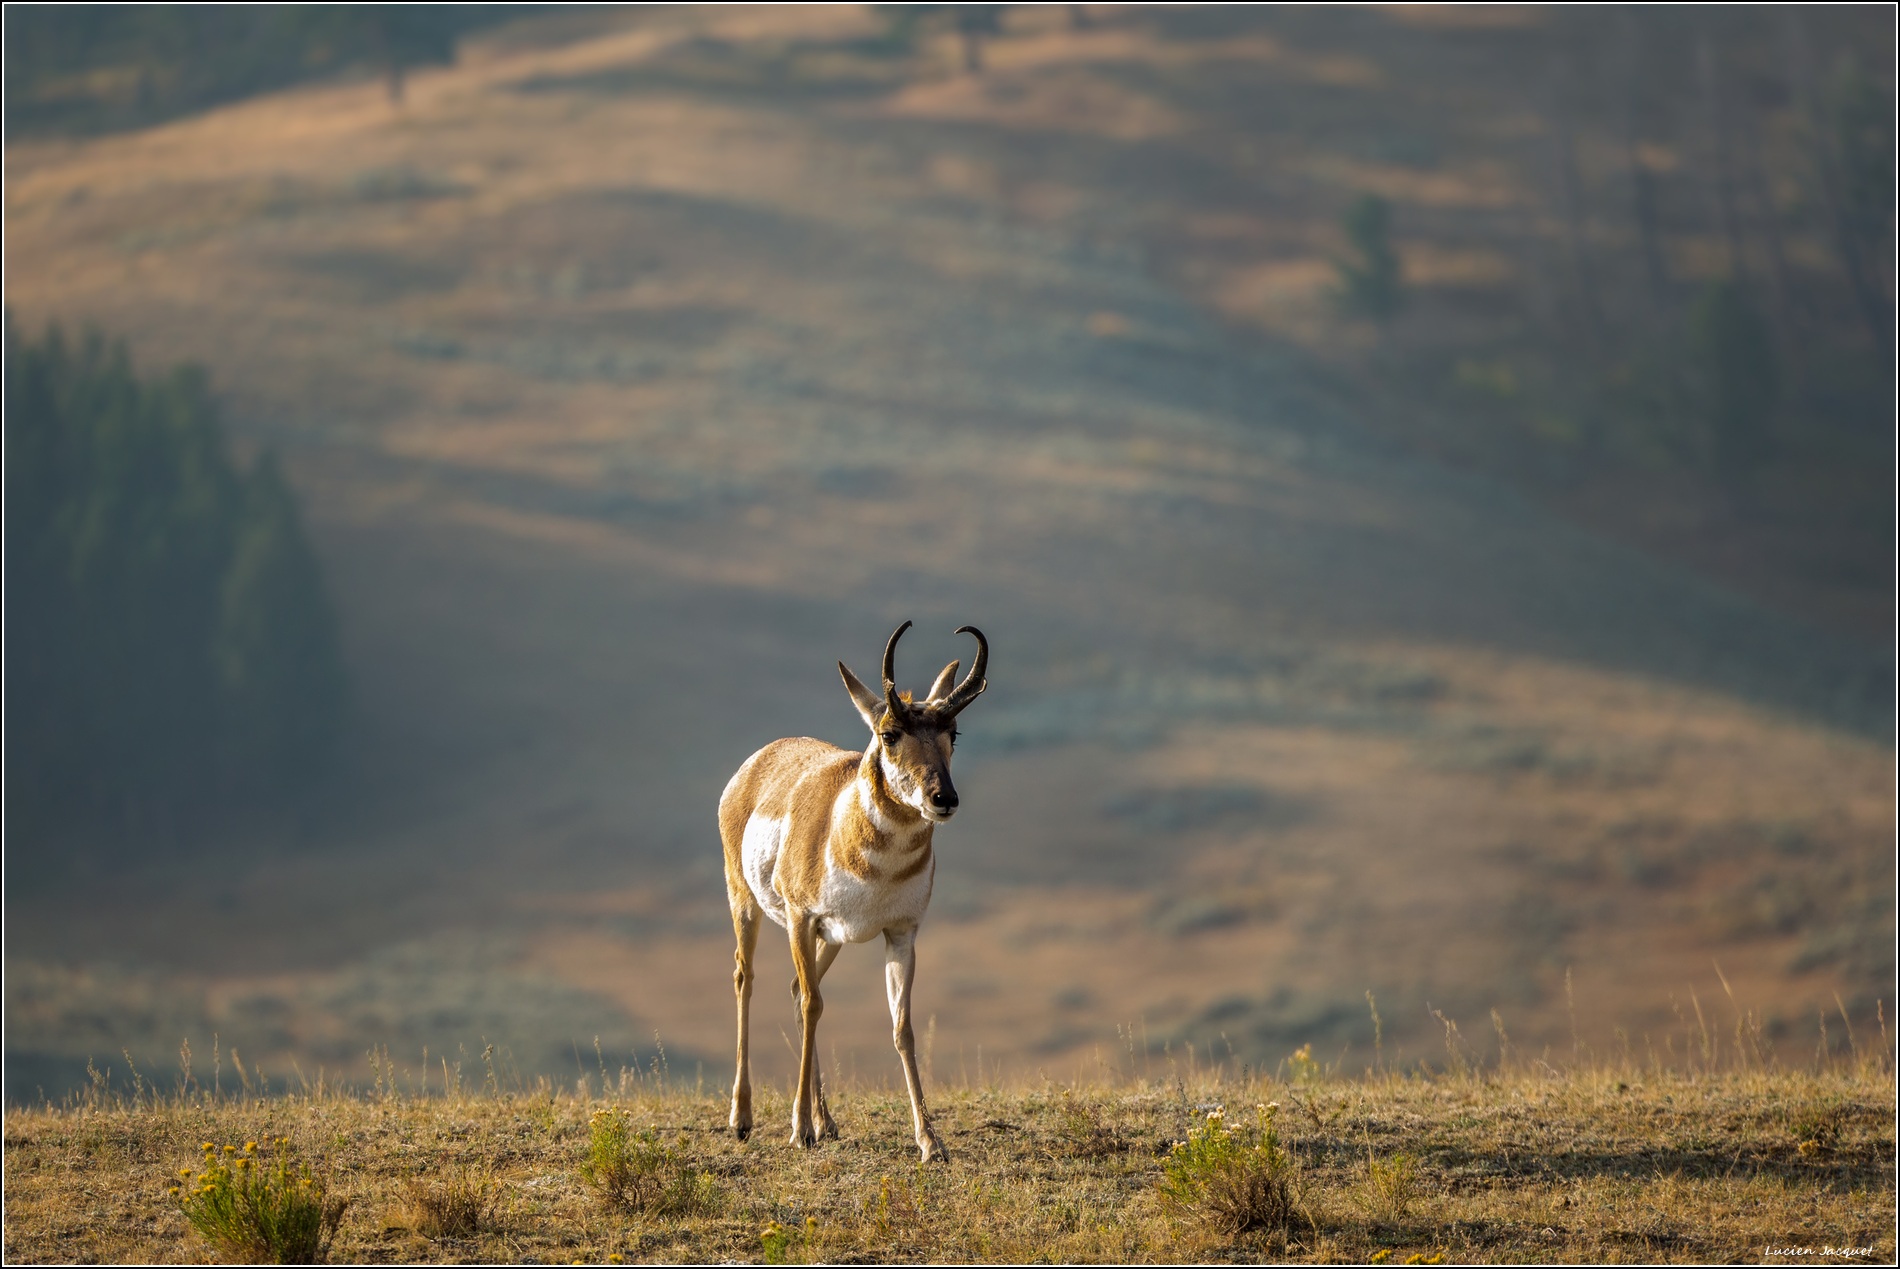 Pronghorn, antilope d'Amèrique du nord